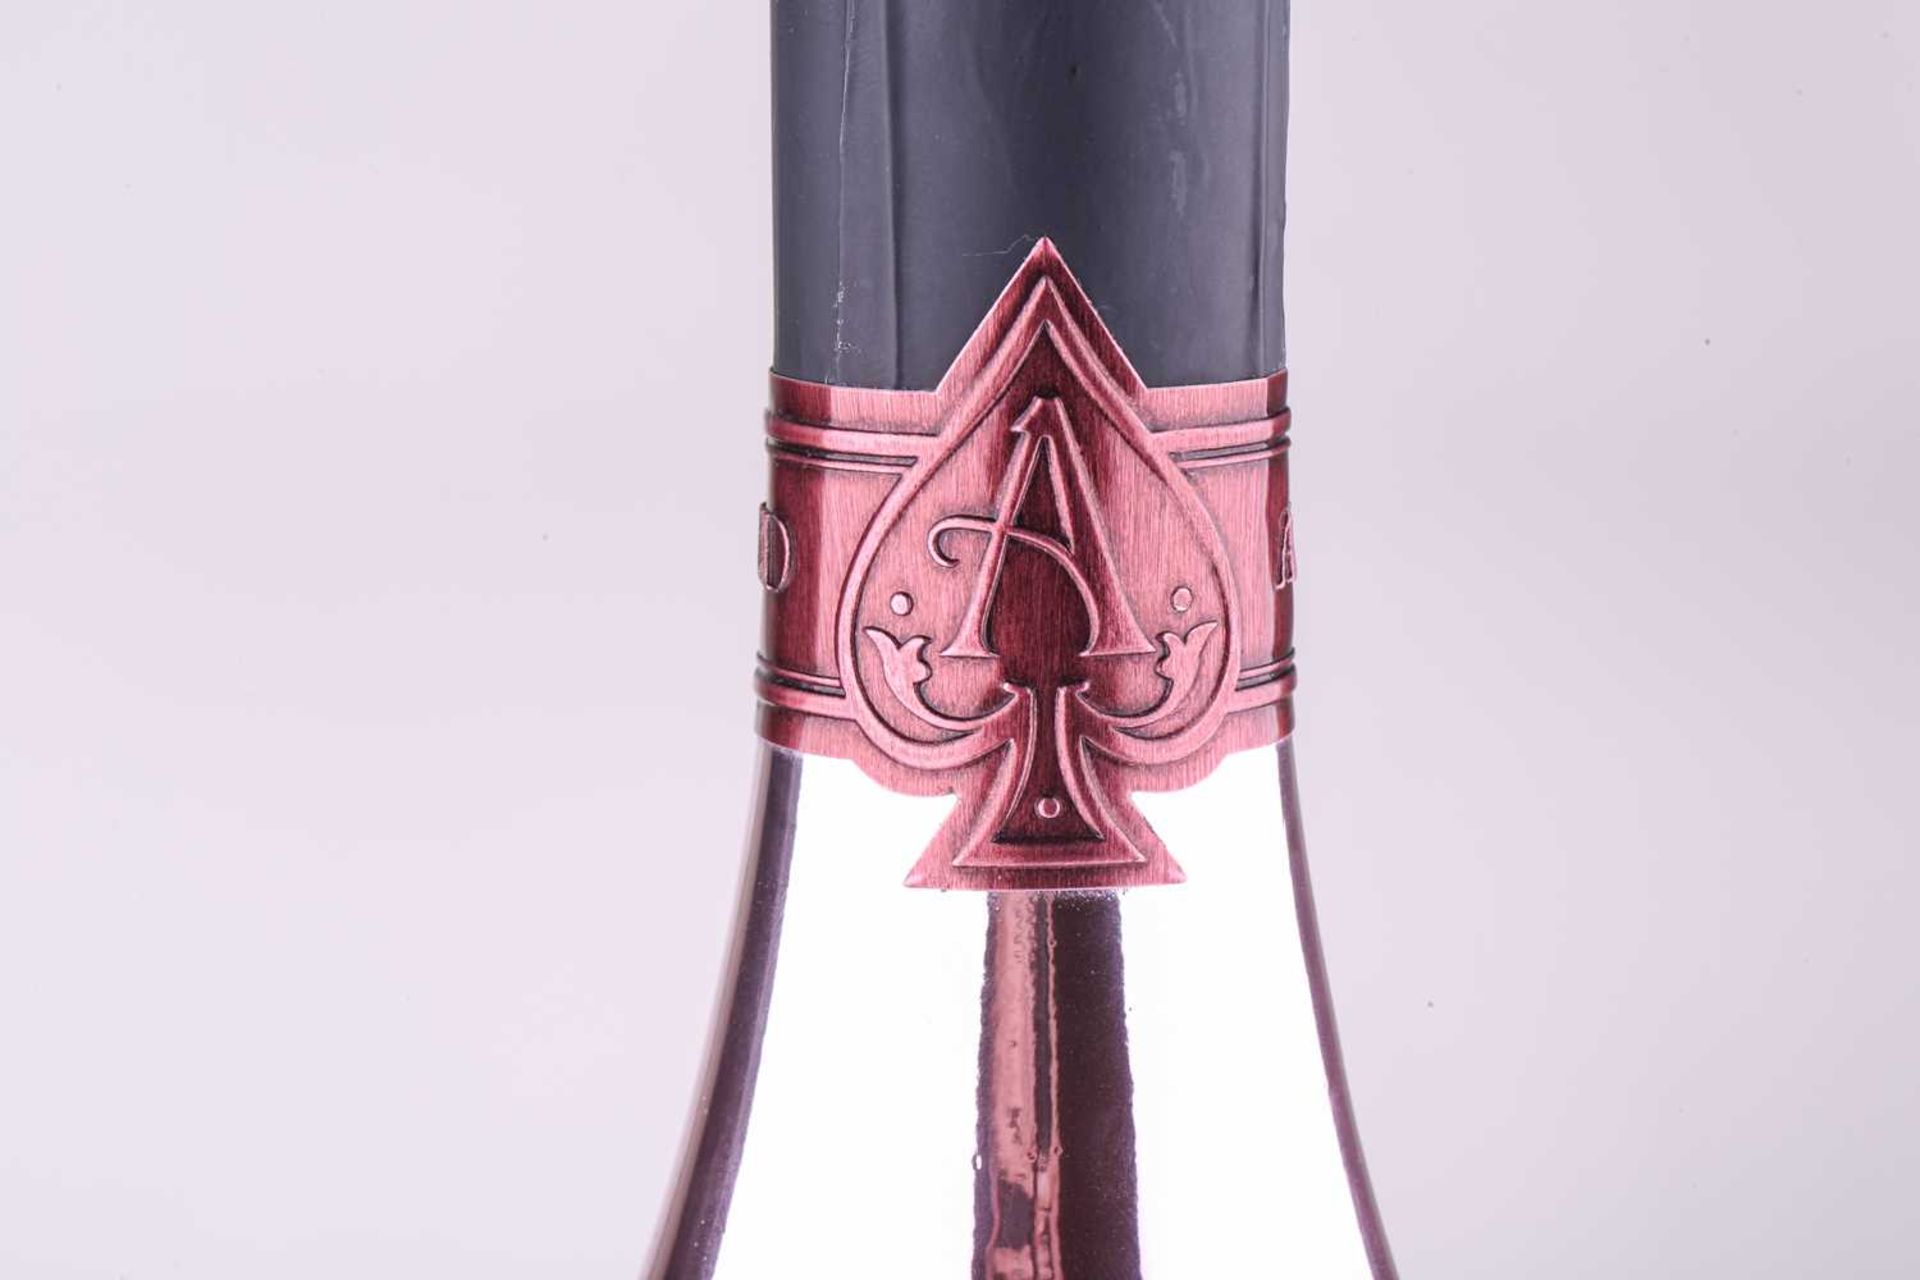 A Jeroboam of Cattier Armand de Brignac Ace of Spades Brut Rose Champagne, 3lt, 12.5%Private - Bild 11 aus 11